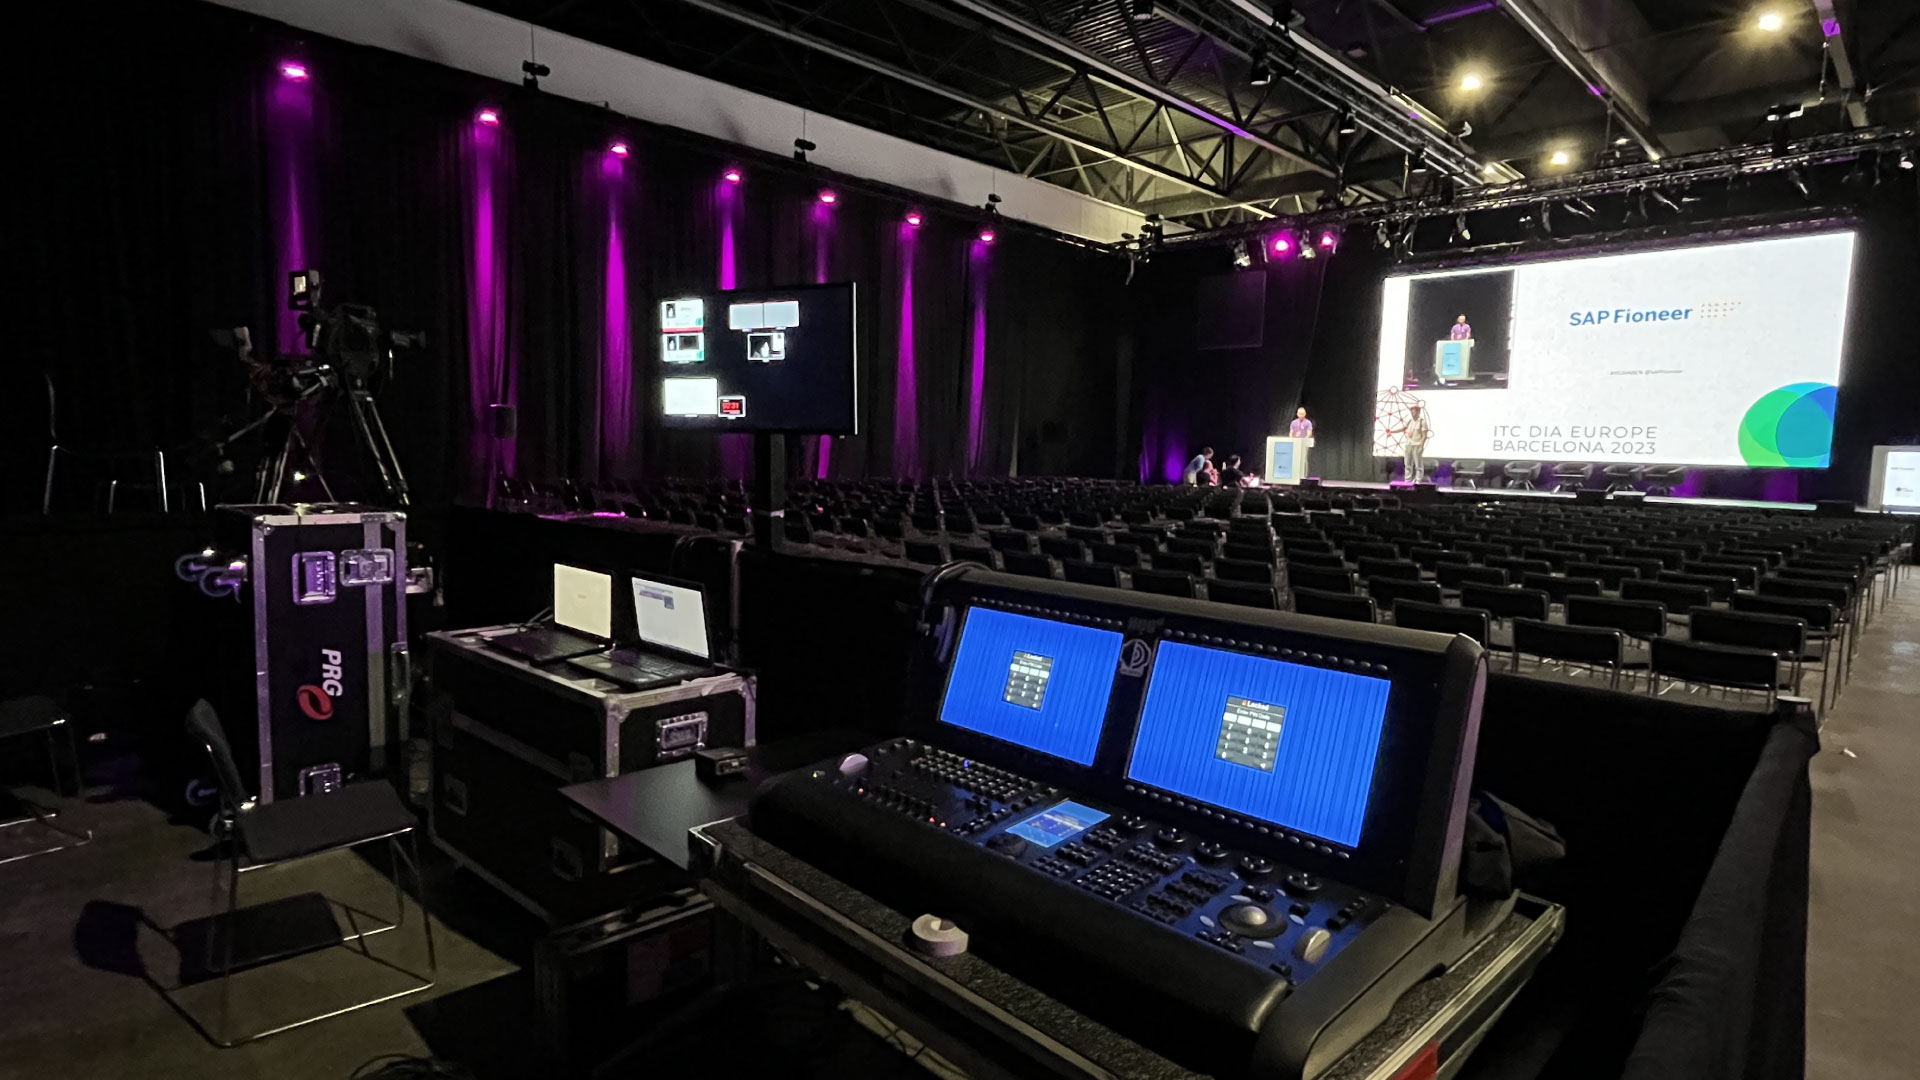 PRG Spanien und PRG Niederlande arbeiteten zusammen, um für ITC DIA Europe einen kompletten 360º-Service mit Lichtrigging, Ton, Video, Übertragung und Bühnen zu bieten